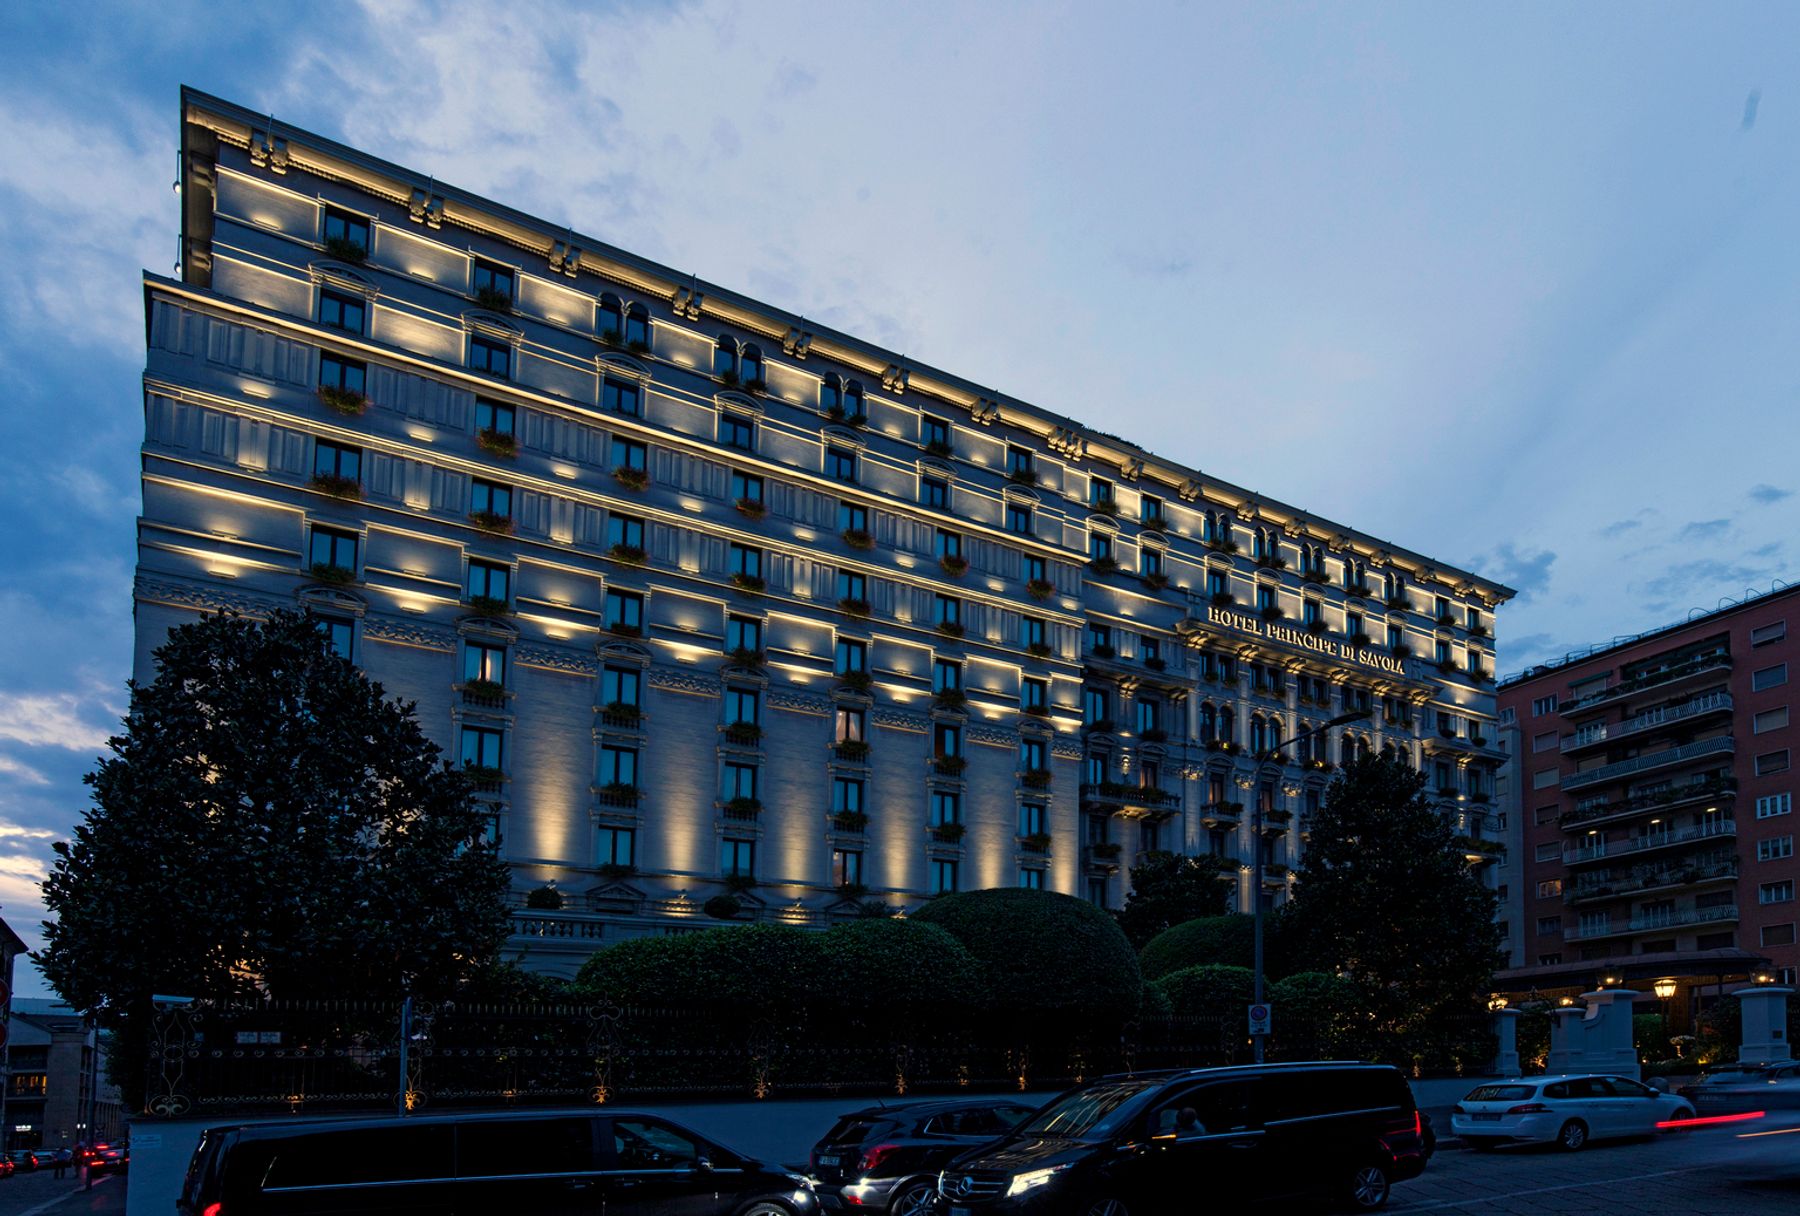 Hotel Principe Di Savoia, Milán. Arquitectura: Cesare Tenca. Diseño de iluminación: Marco Nereo Rotelli, Milán. Fotografía: Dirk Vogel, Altena.